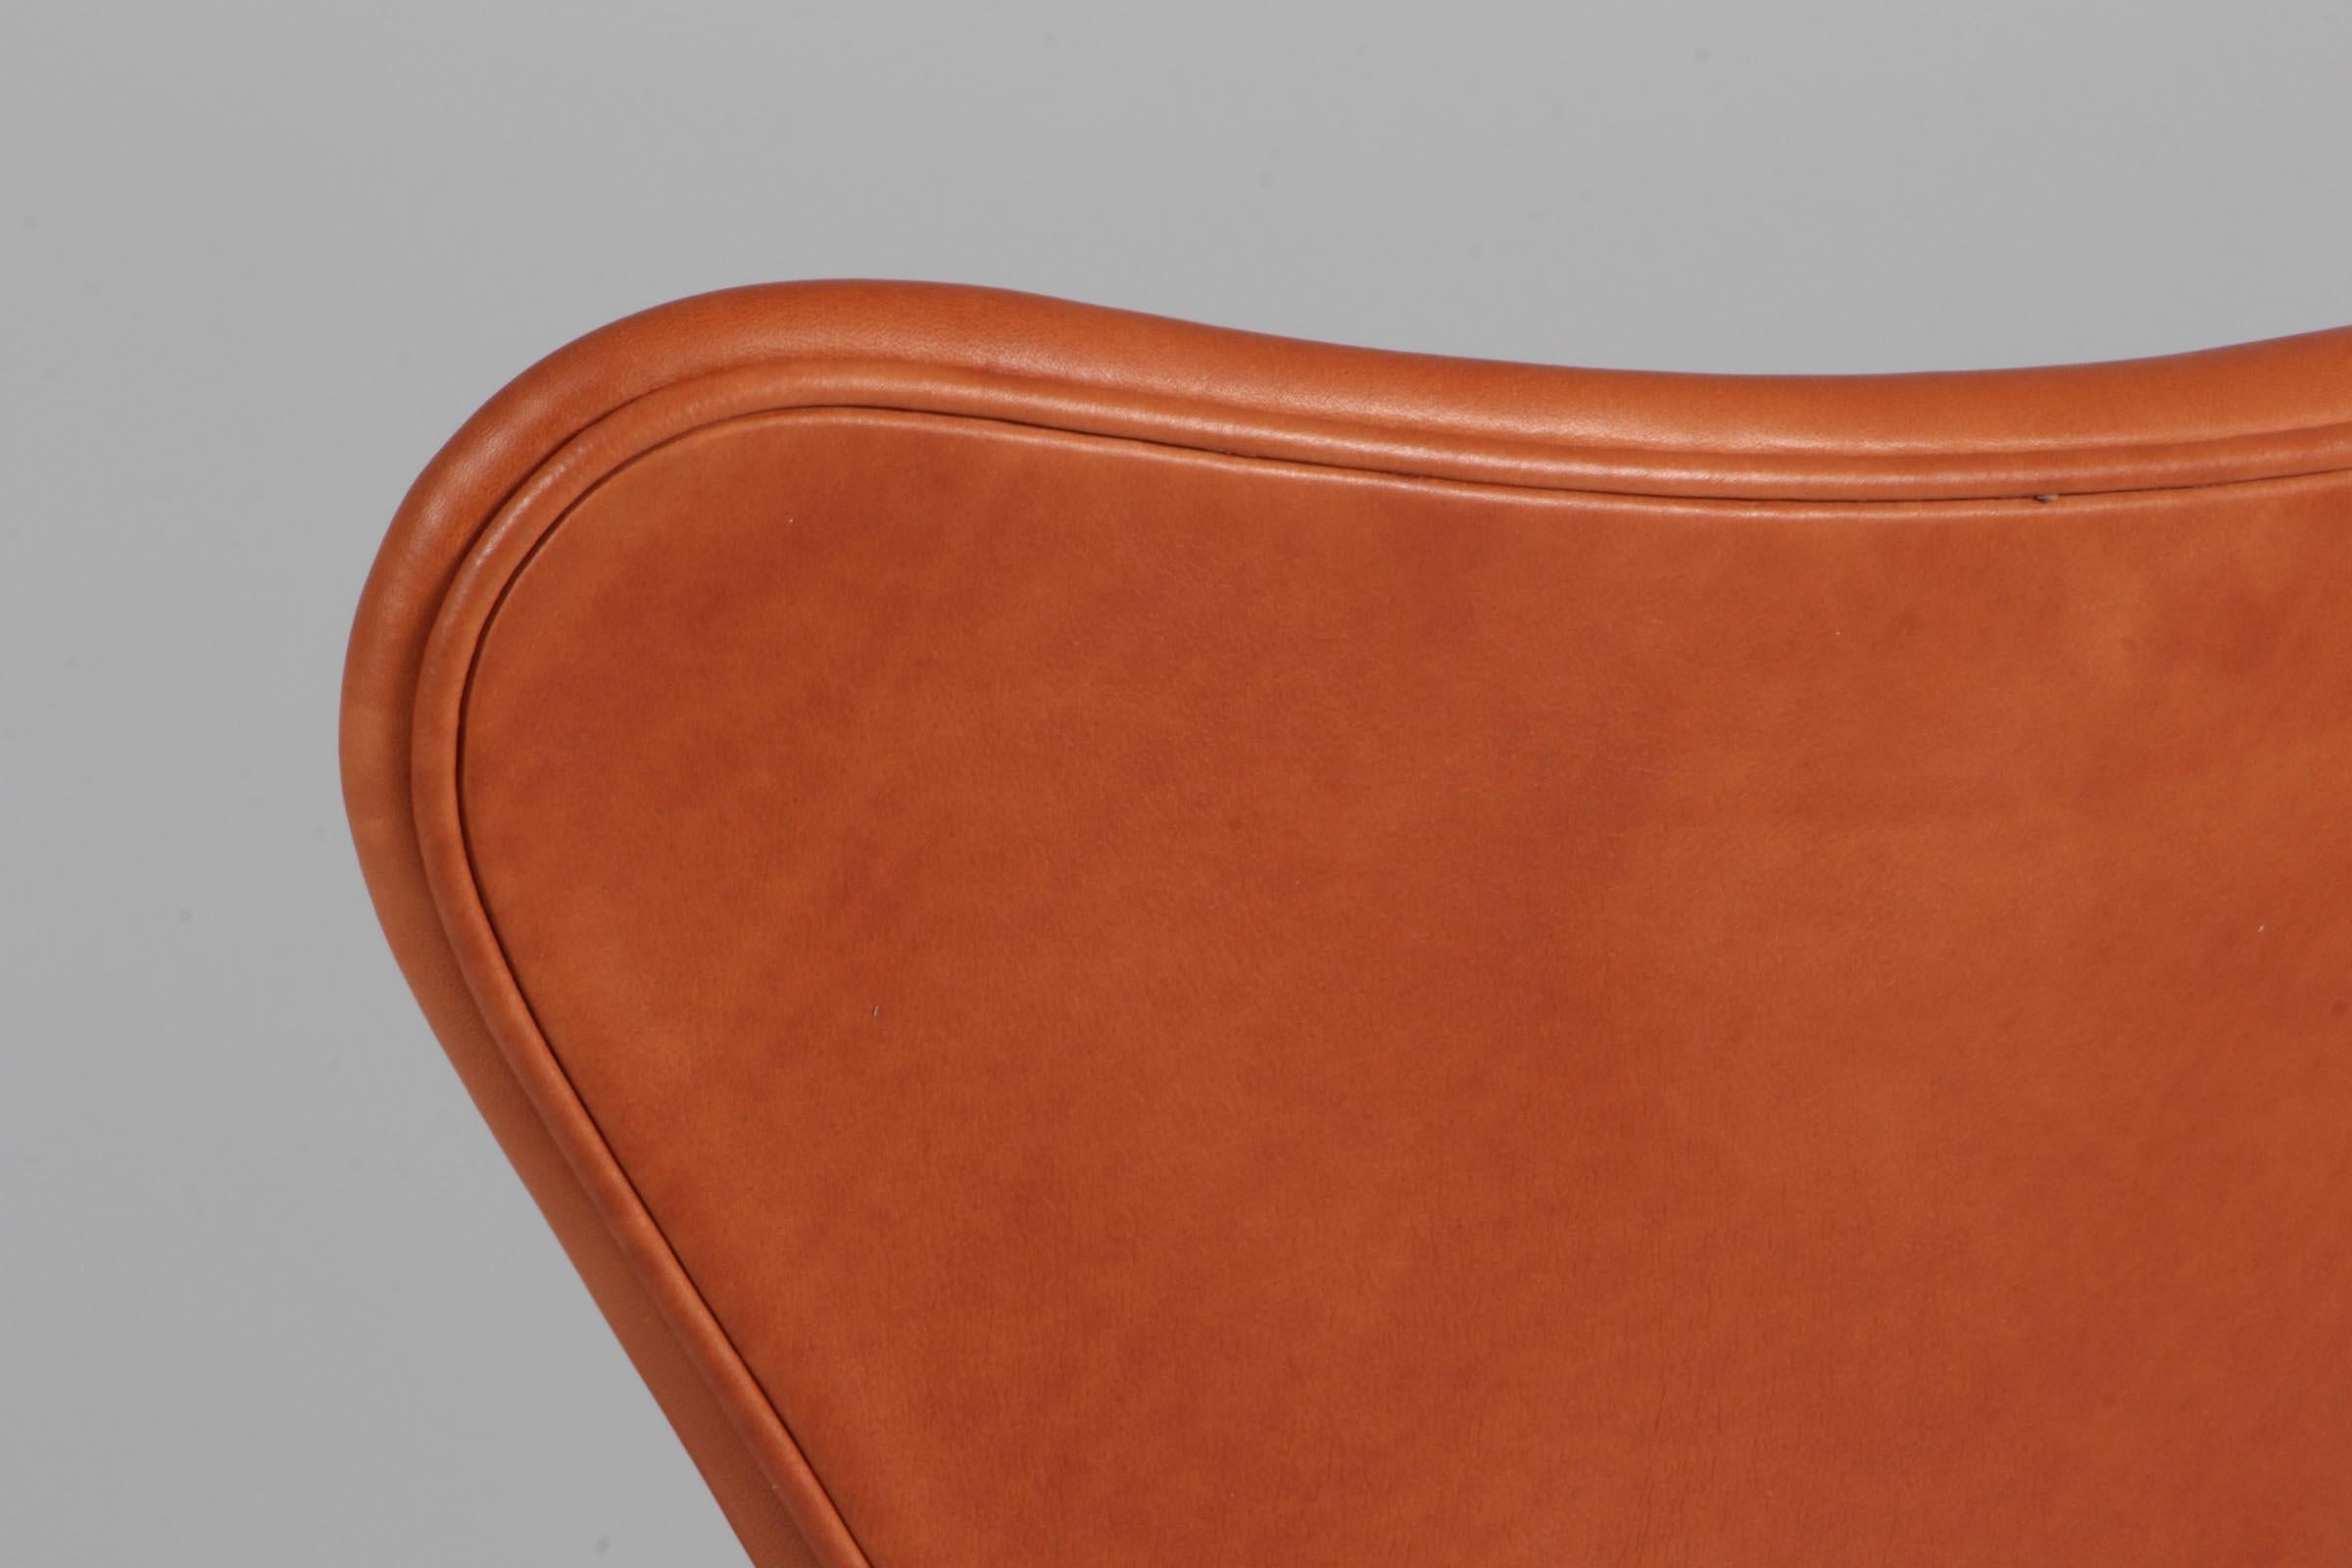 Cuir Chaise de bureau Arne Jacobsen, modèle « Syveren » 3107, cuir aniline cognac